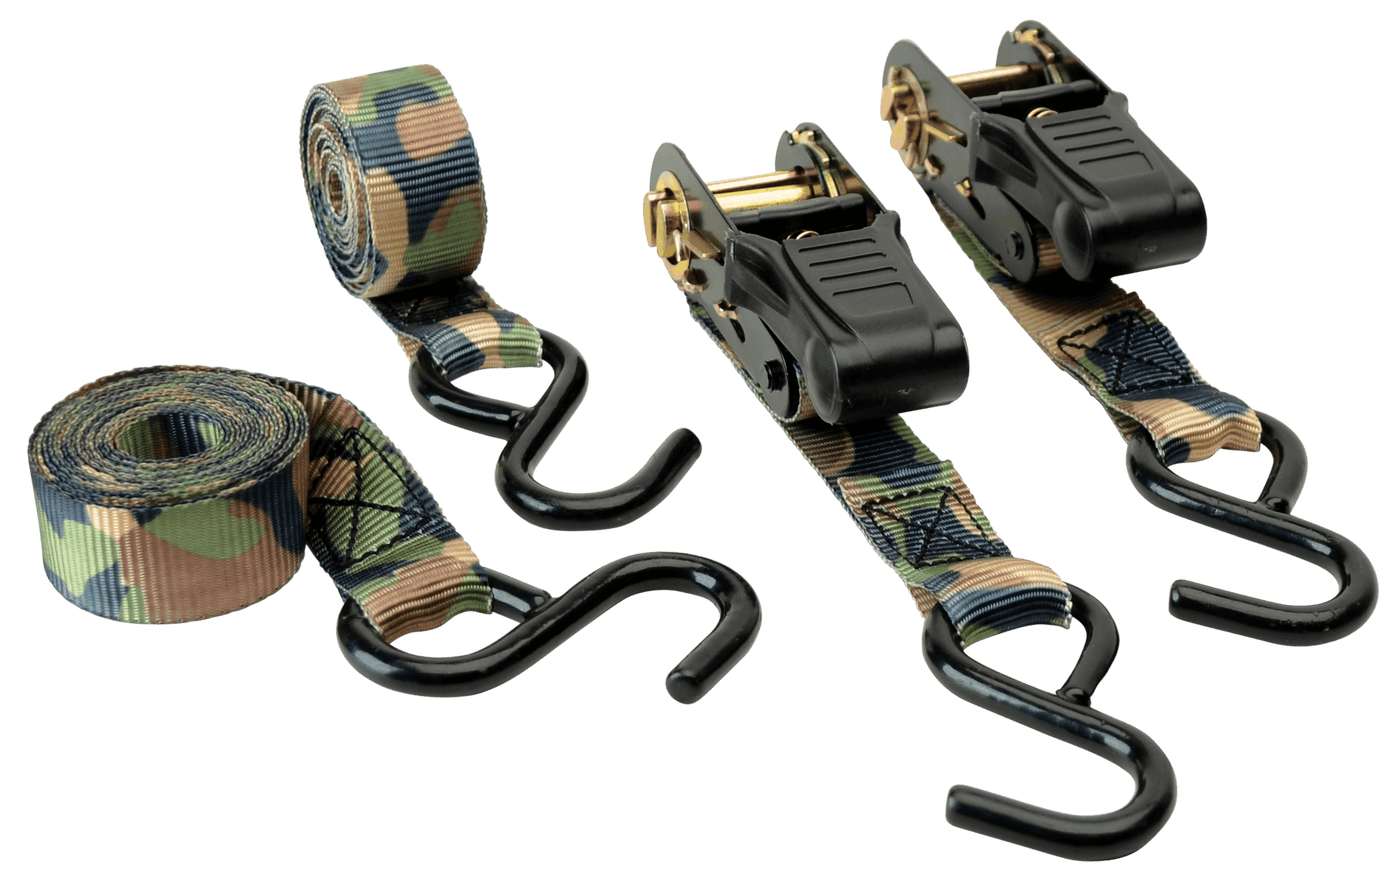 HME Hme Camouflage Ratchet, Hme Rs-4pk         8'rtcht Tiedown Straps Camo 4pk Accessories